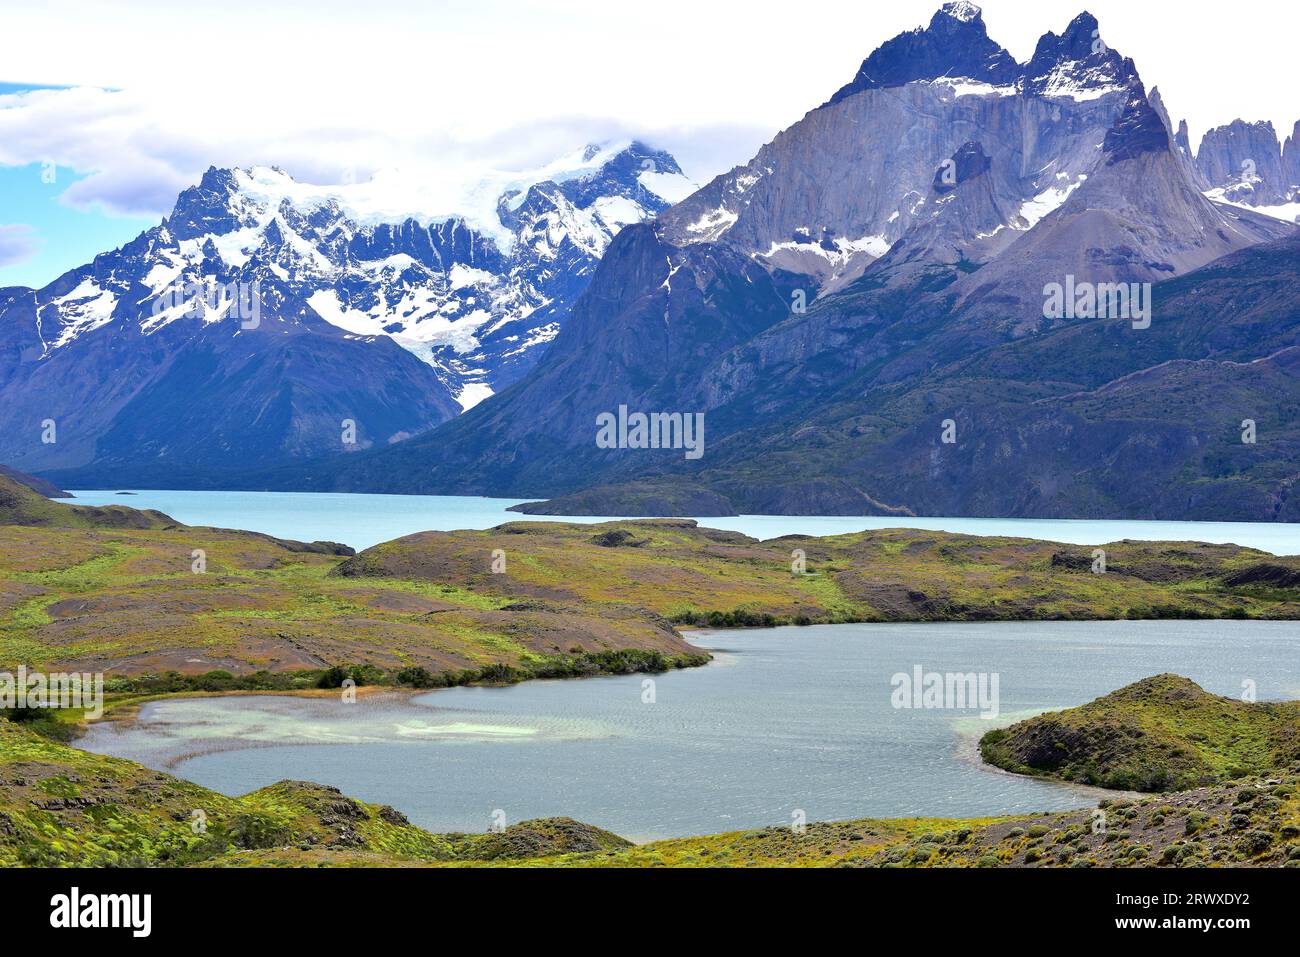 Parco nazionale Torres del Paine da Laguna larga e Lago Nordenskjold. Questa montagna è un laccolite, la roccia chiara è granito e la roccia scura è un metamoro Foto Stock